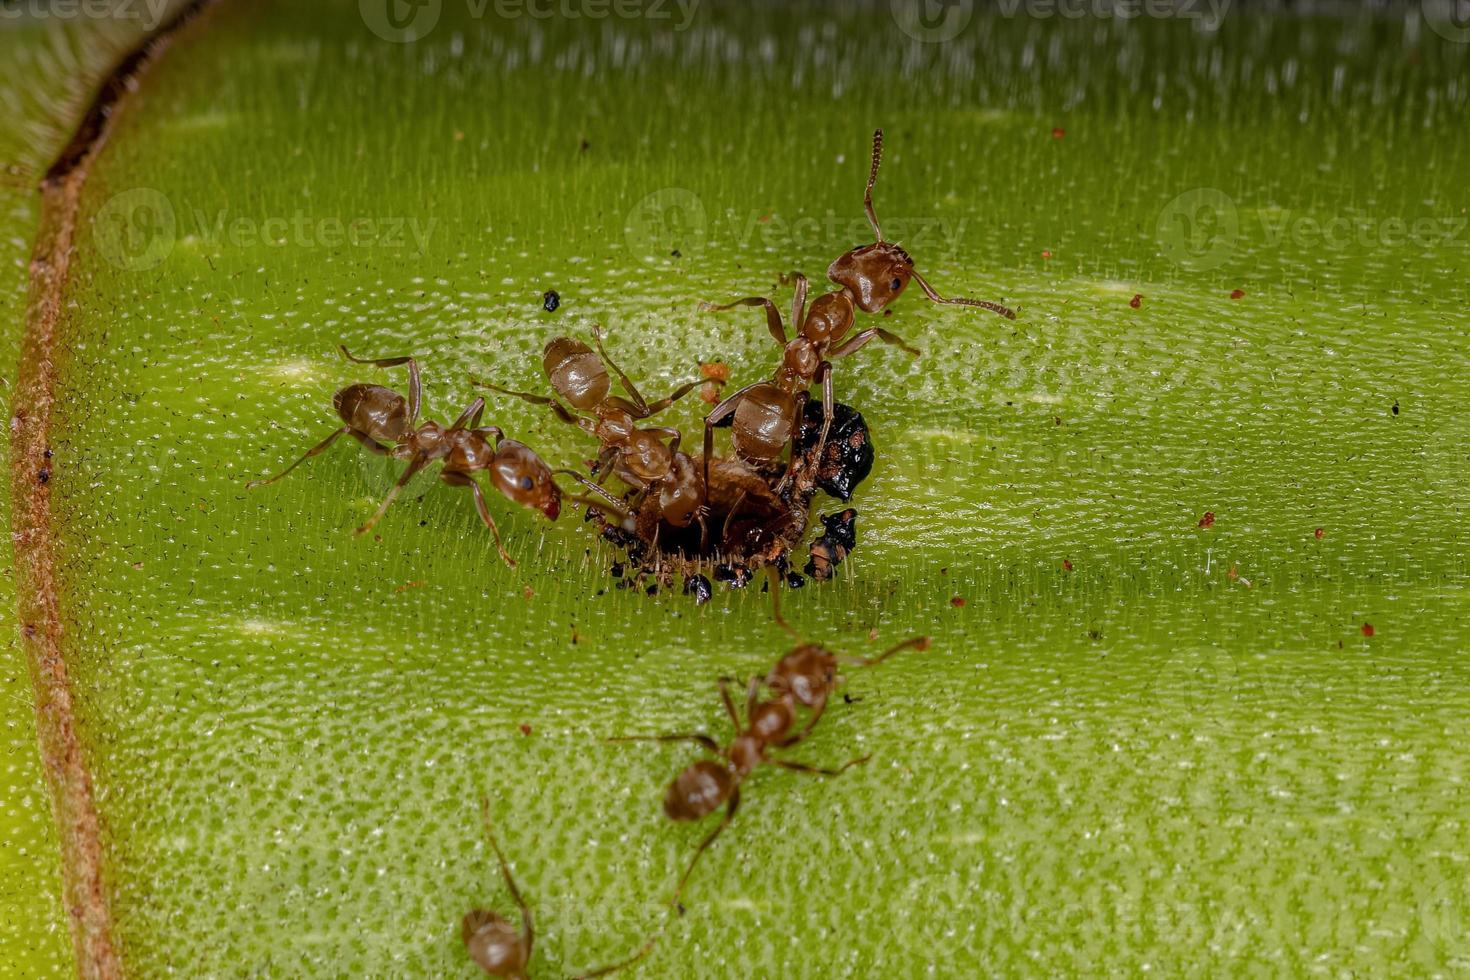 formigas de cecropia adultas em um tronco de cecropia foto